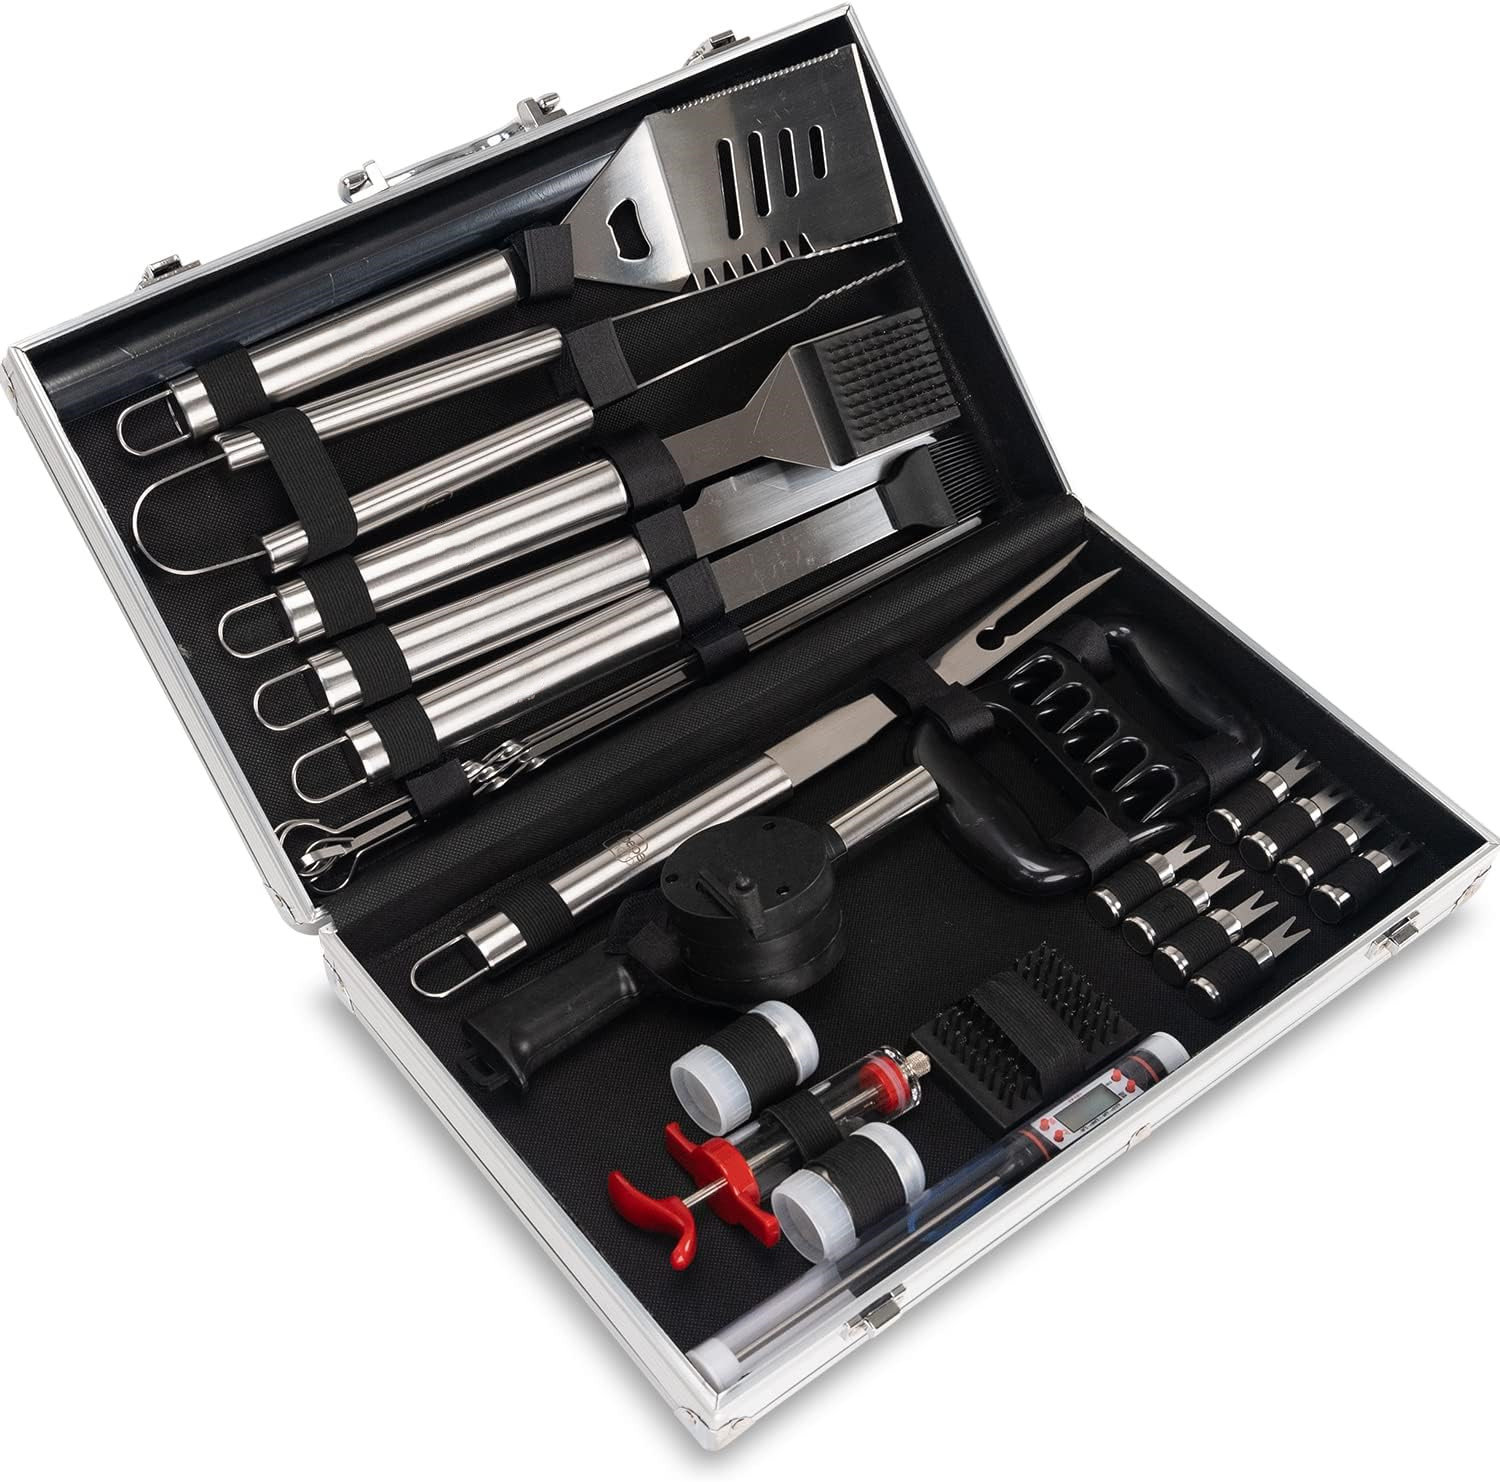 https://assets.wfcdn.com/im/01168387/compr-r85/2397/239783821/stainless-steel-dishwasher-safe-grilling-tool-set.jpg